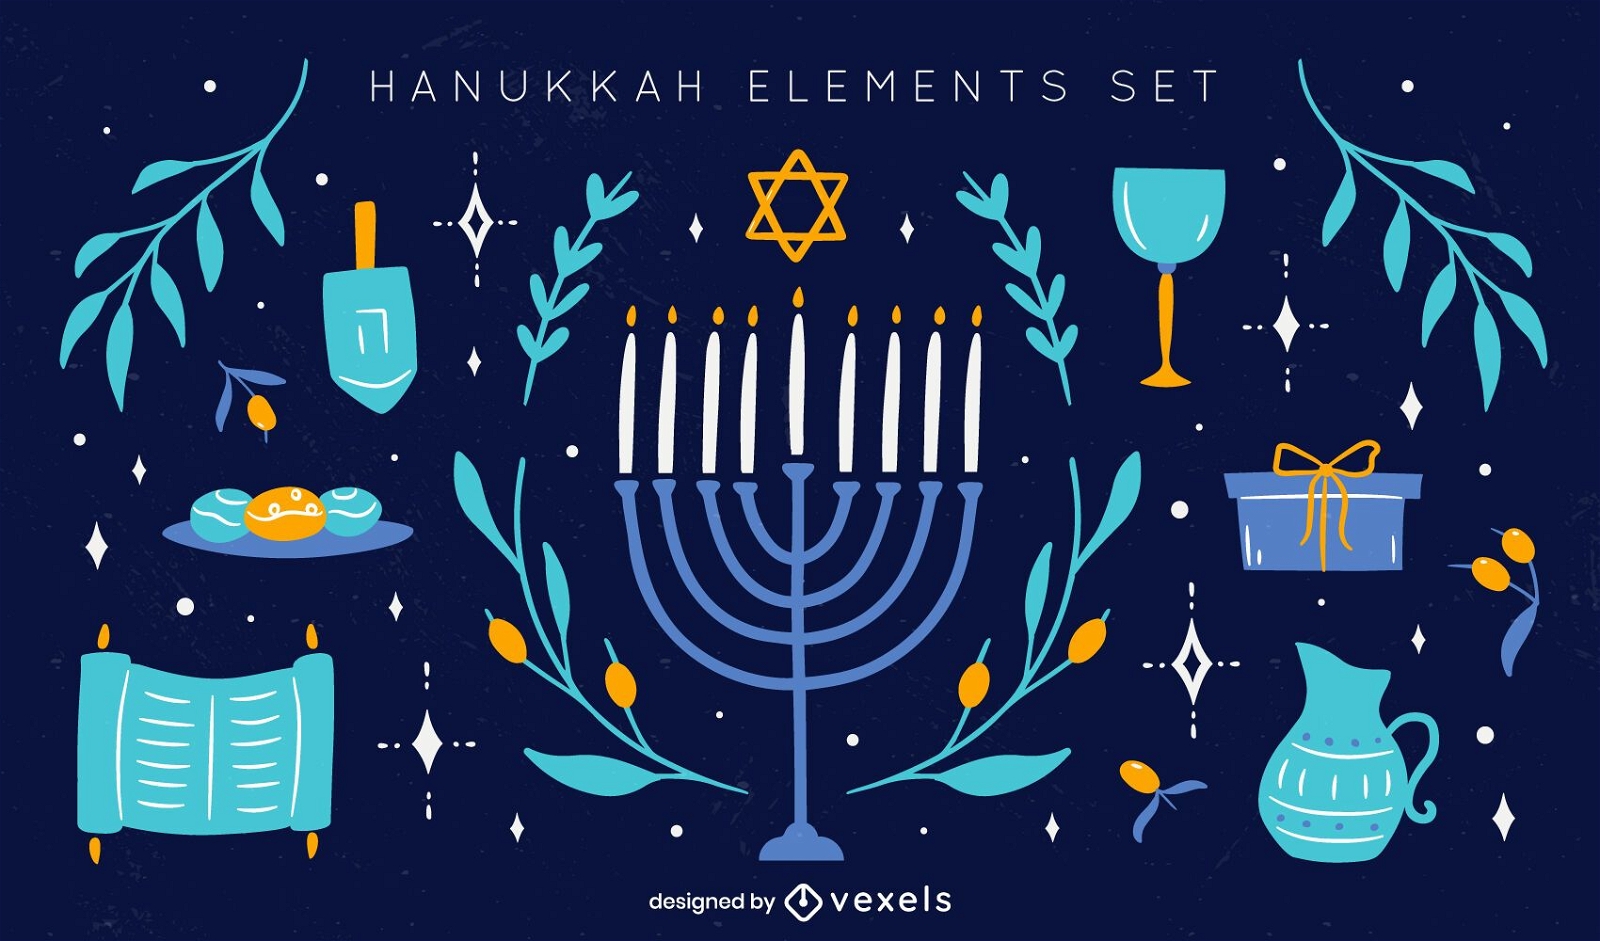 Hanukkah elements doodle set